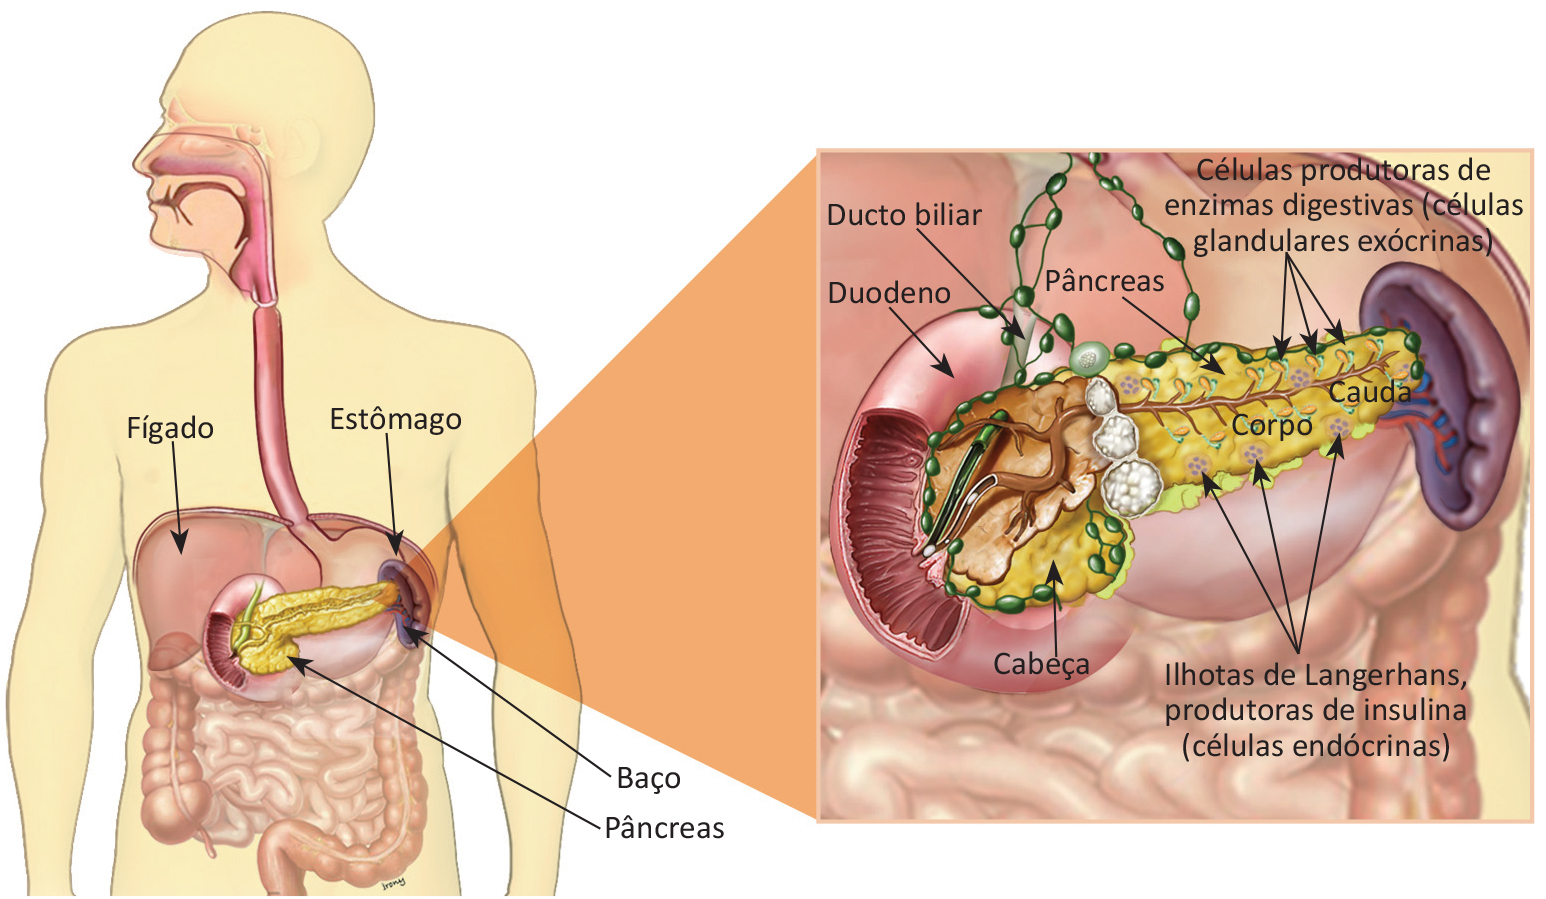 Crescimento local do câncer de pâncreas